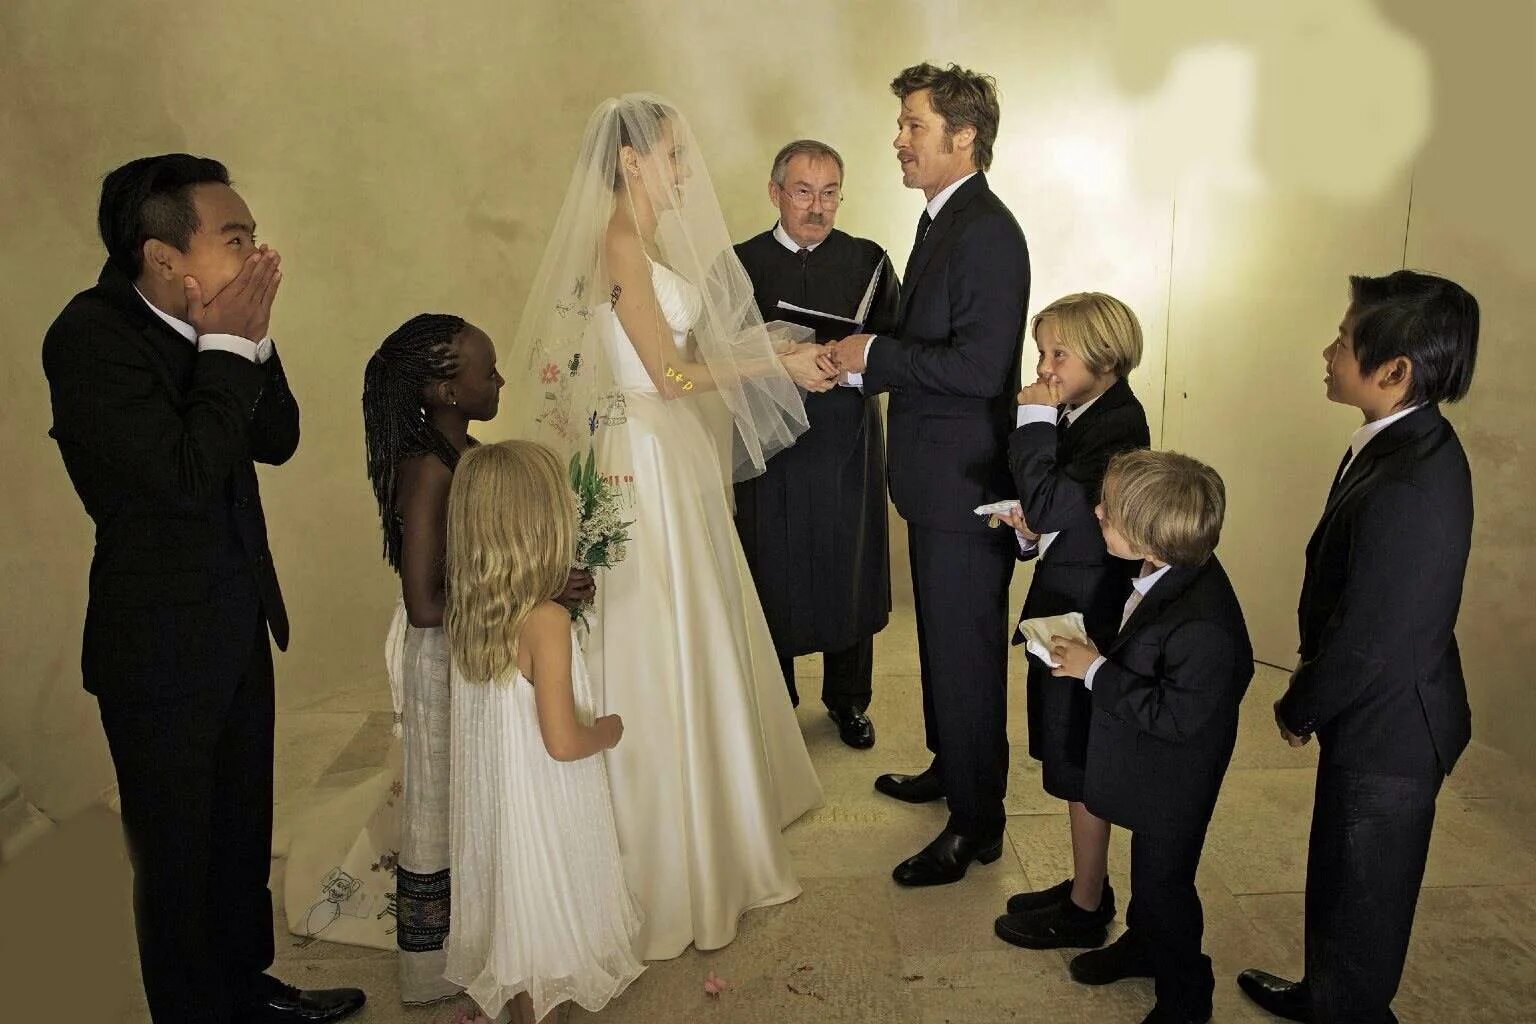 Анджелина Джоли и бред Питт свадьба. Свадьба Анджелины Джоли и бреда Питта. Бред Питт и Анжелина Джоли свадьба. Джоли и Питт свадьба.